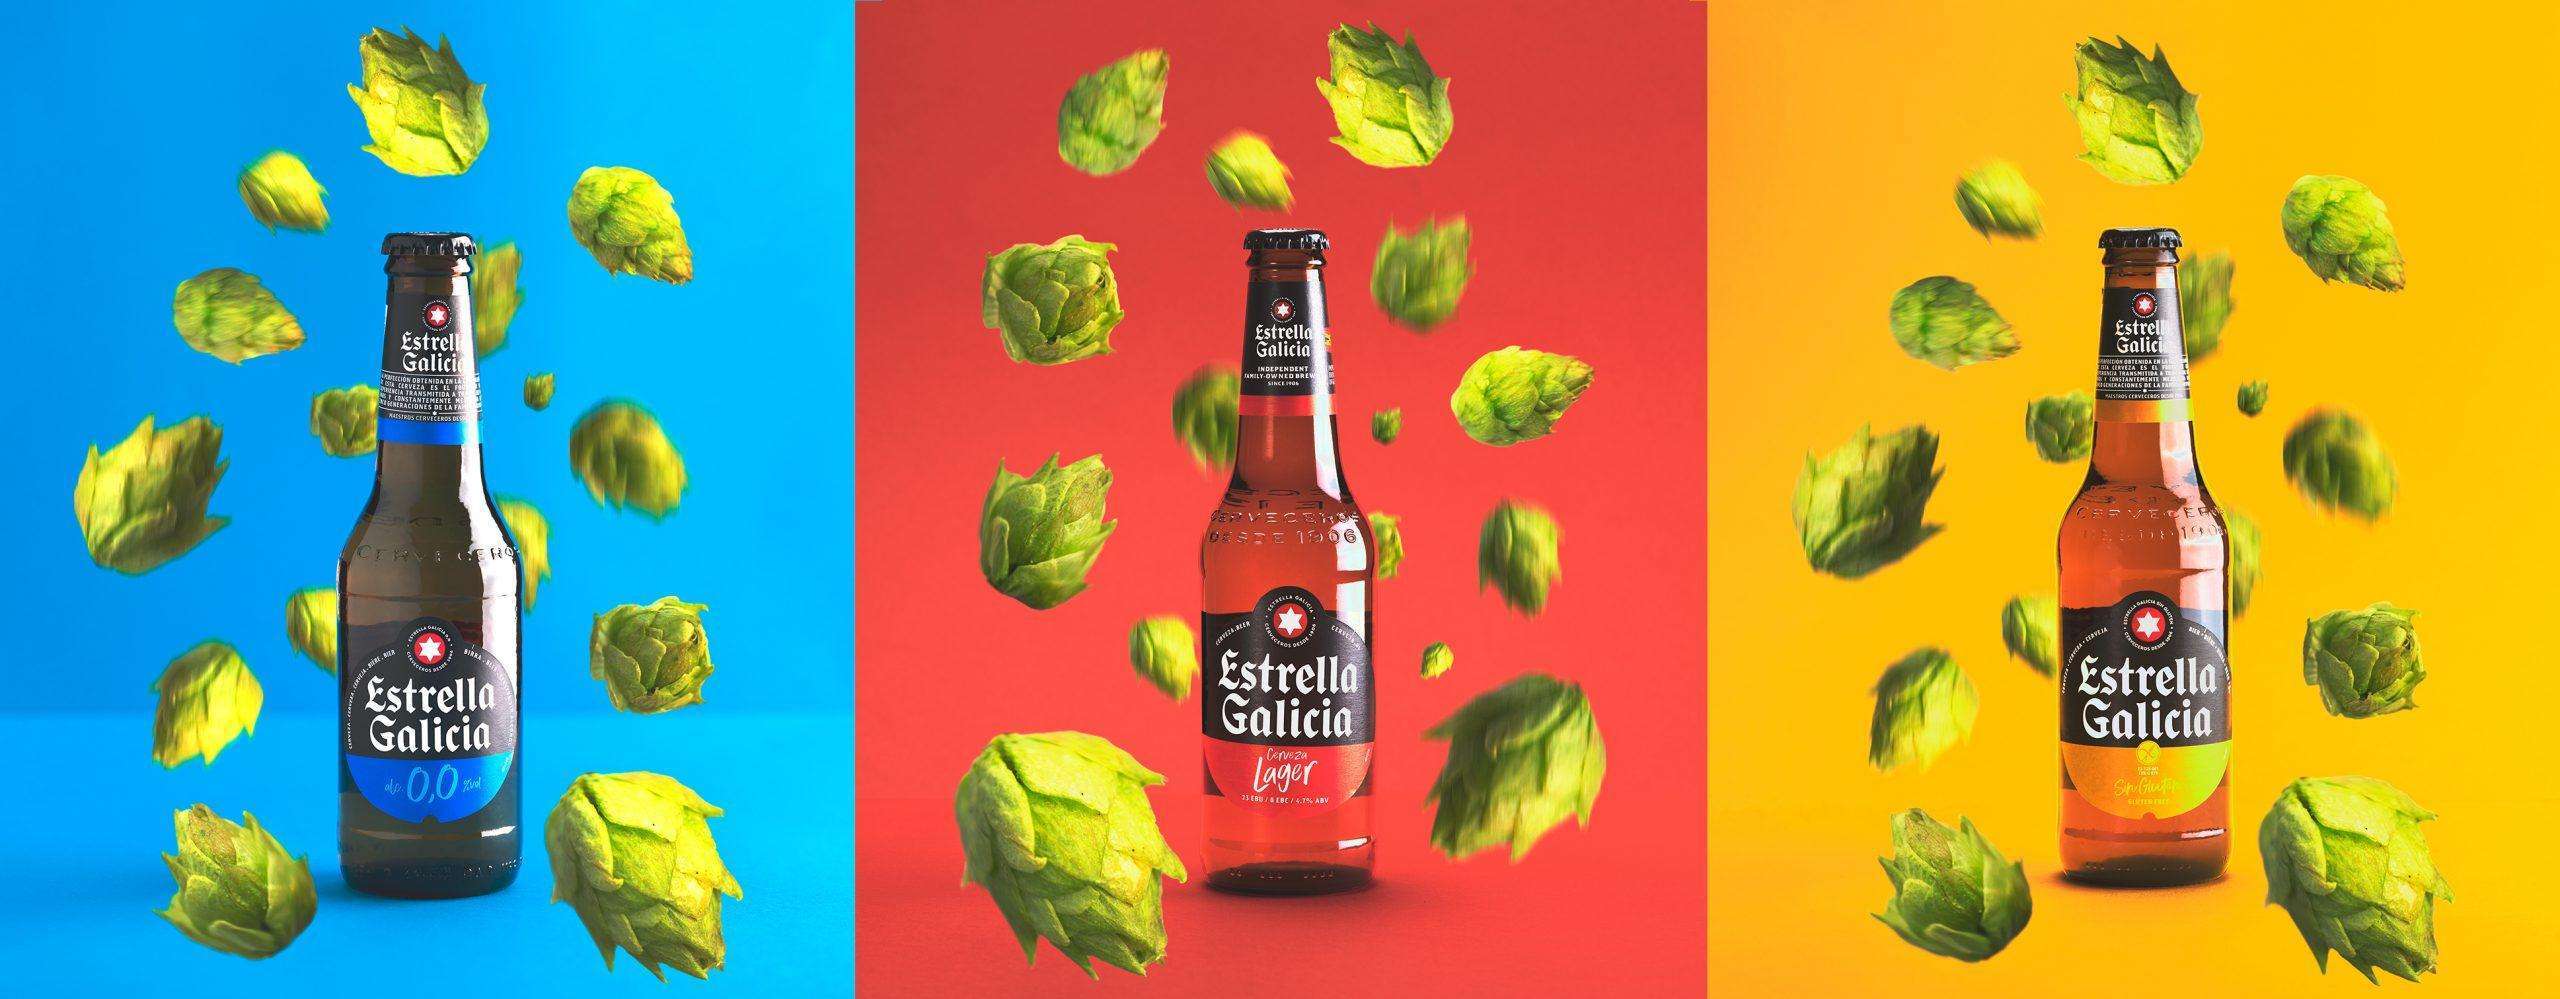 Estrella Galicia beers colorful